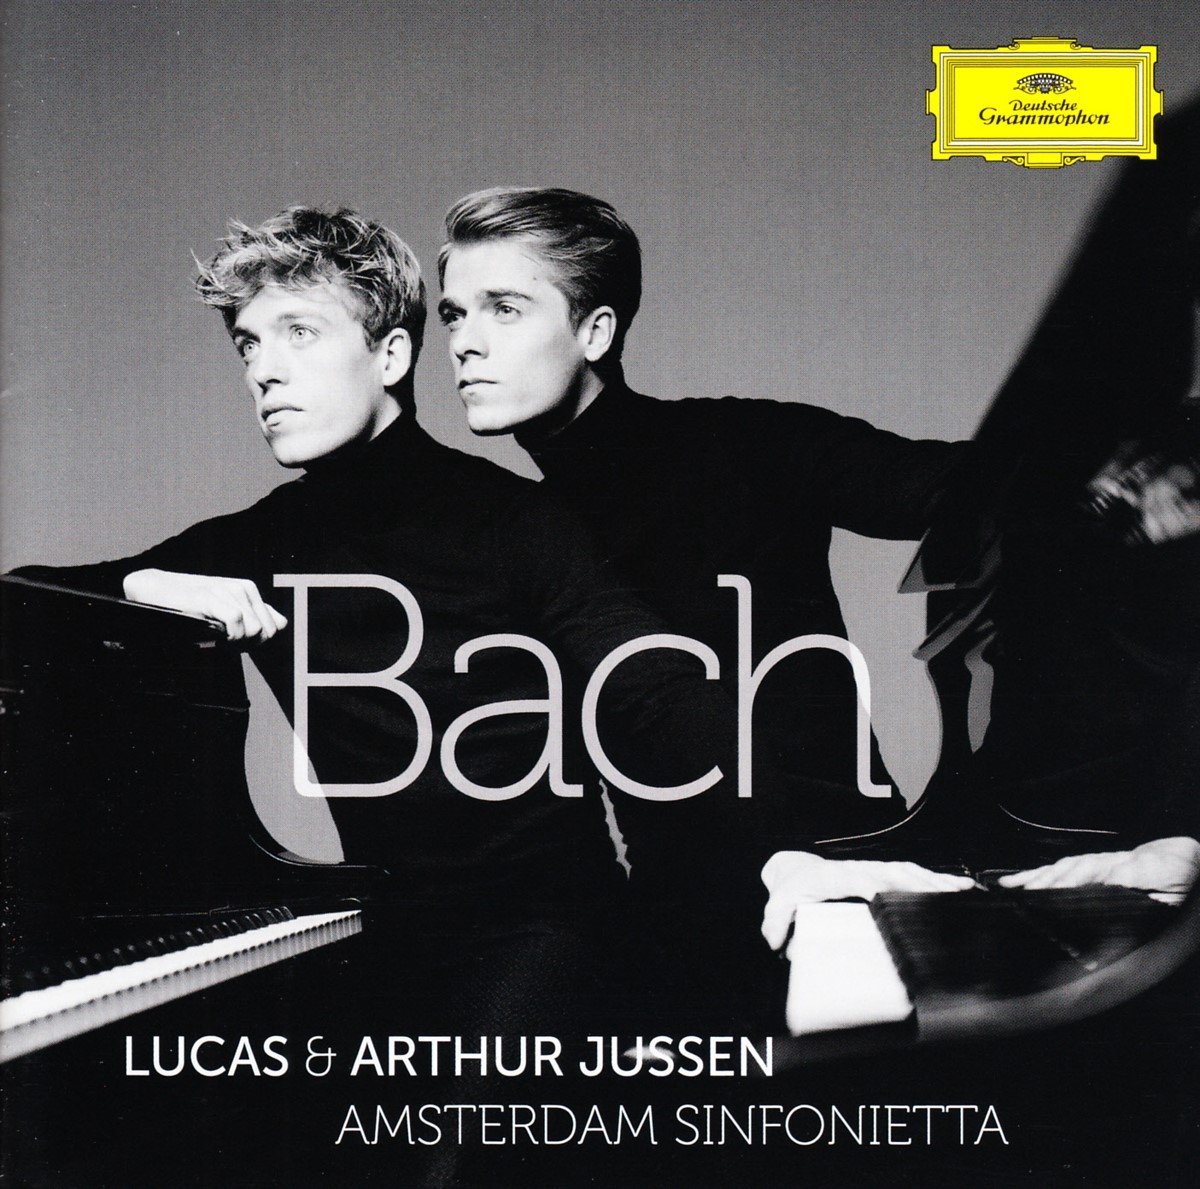 Lucas Jussen, Arthur Jussen, Amsterdam Sinfonietta - Bach (CD) - Lucas Jussen, Arthur Jussen, Amsterdam Sinfonietta